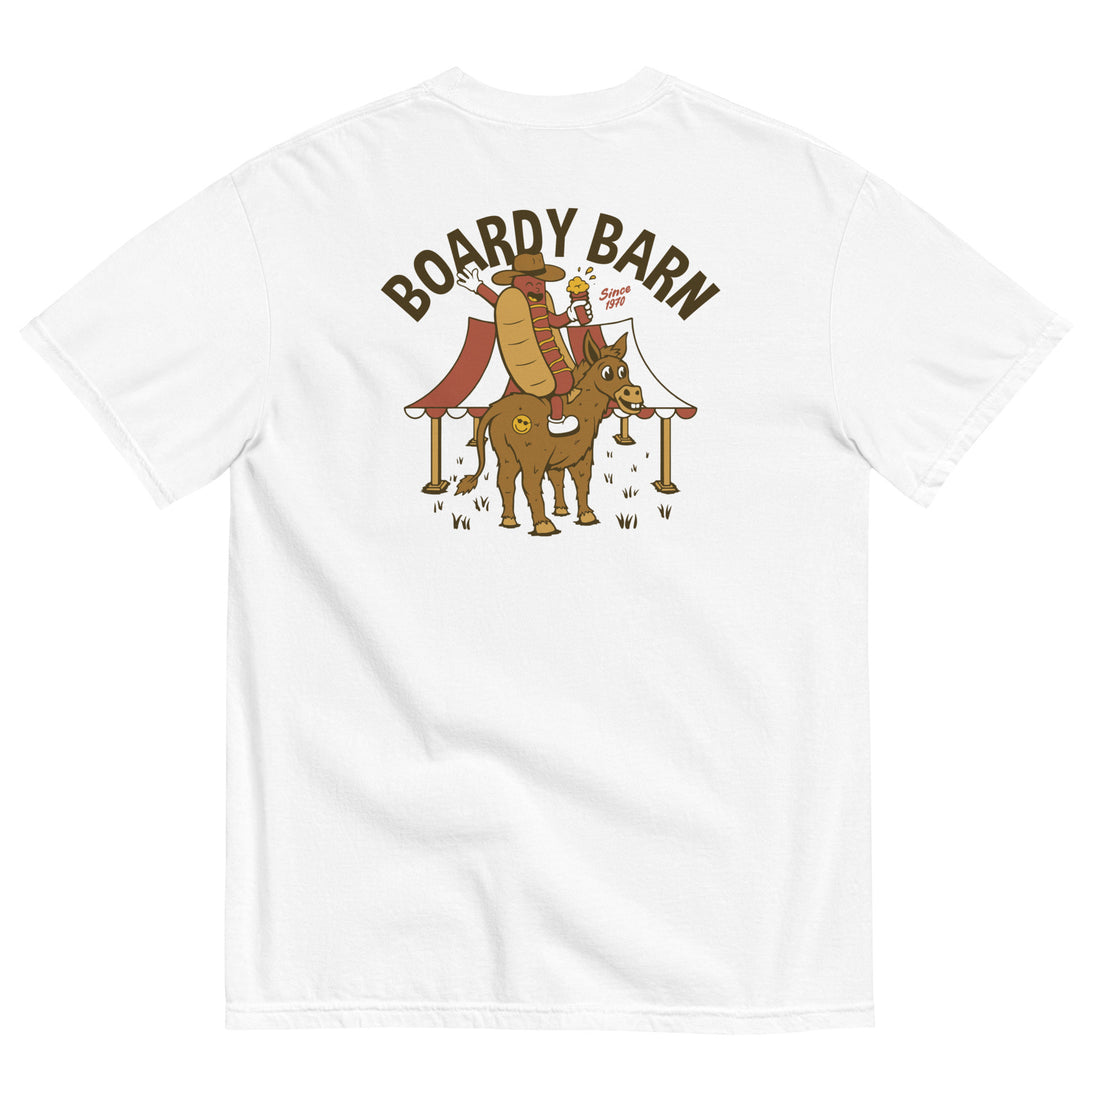 
  
  Dog-n-Donkey Boardy Barn Unisex garment-dyed heavyweight t-shirt
  
